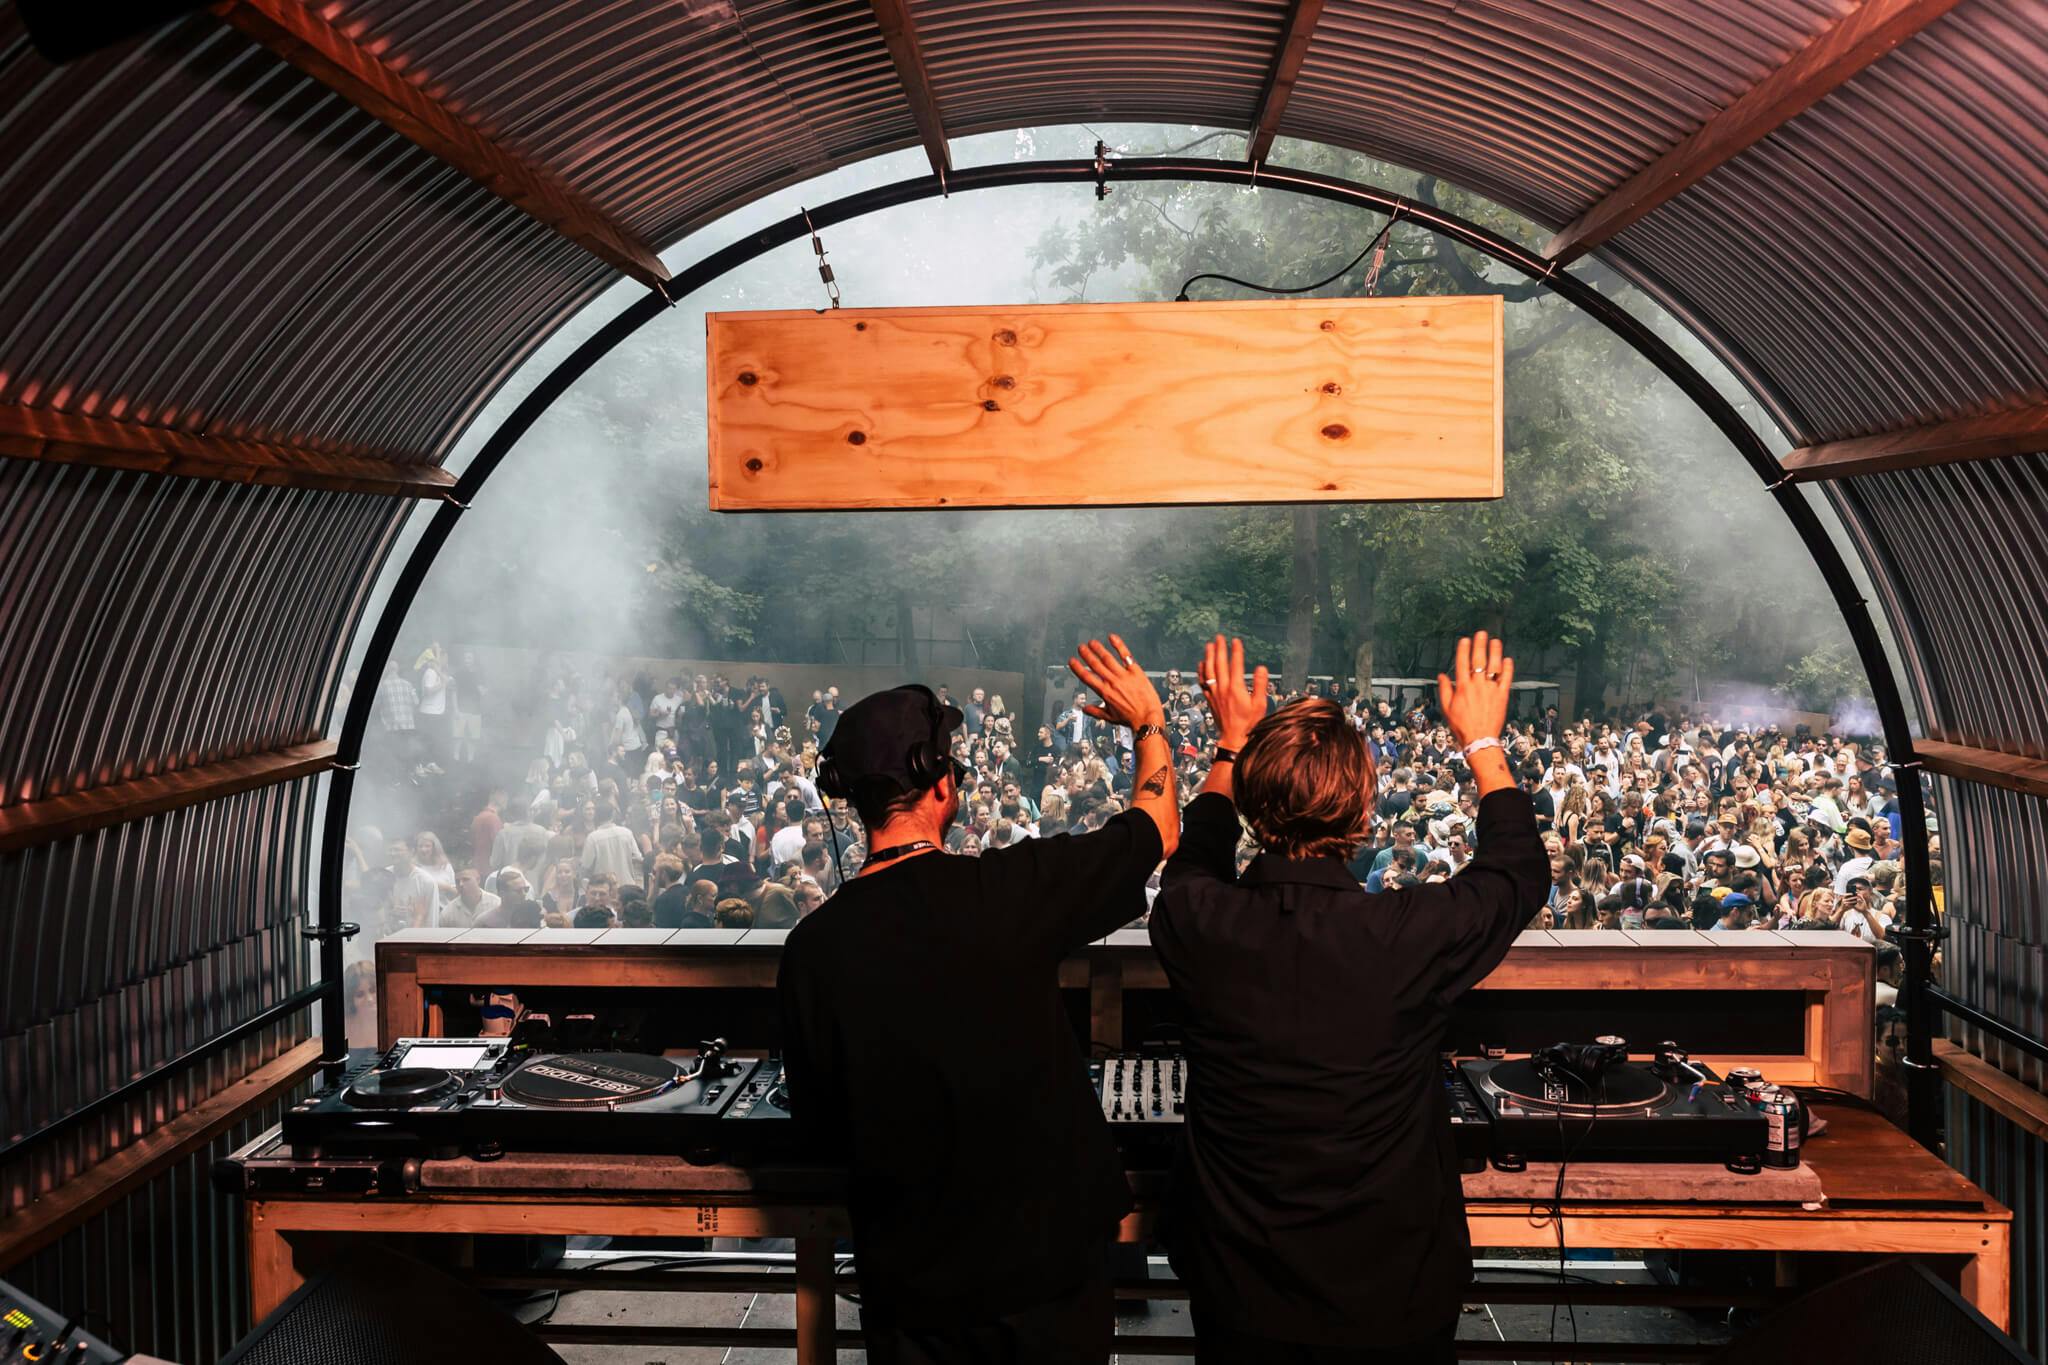 DJs at a festival